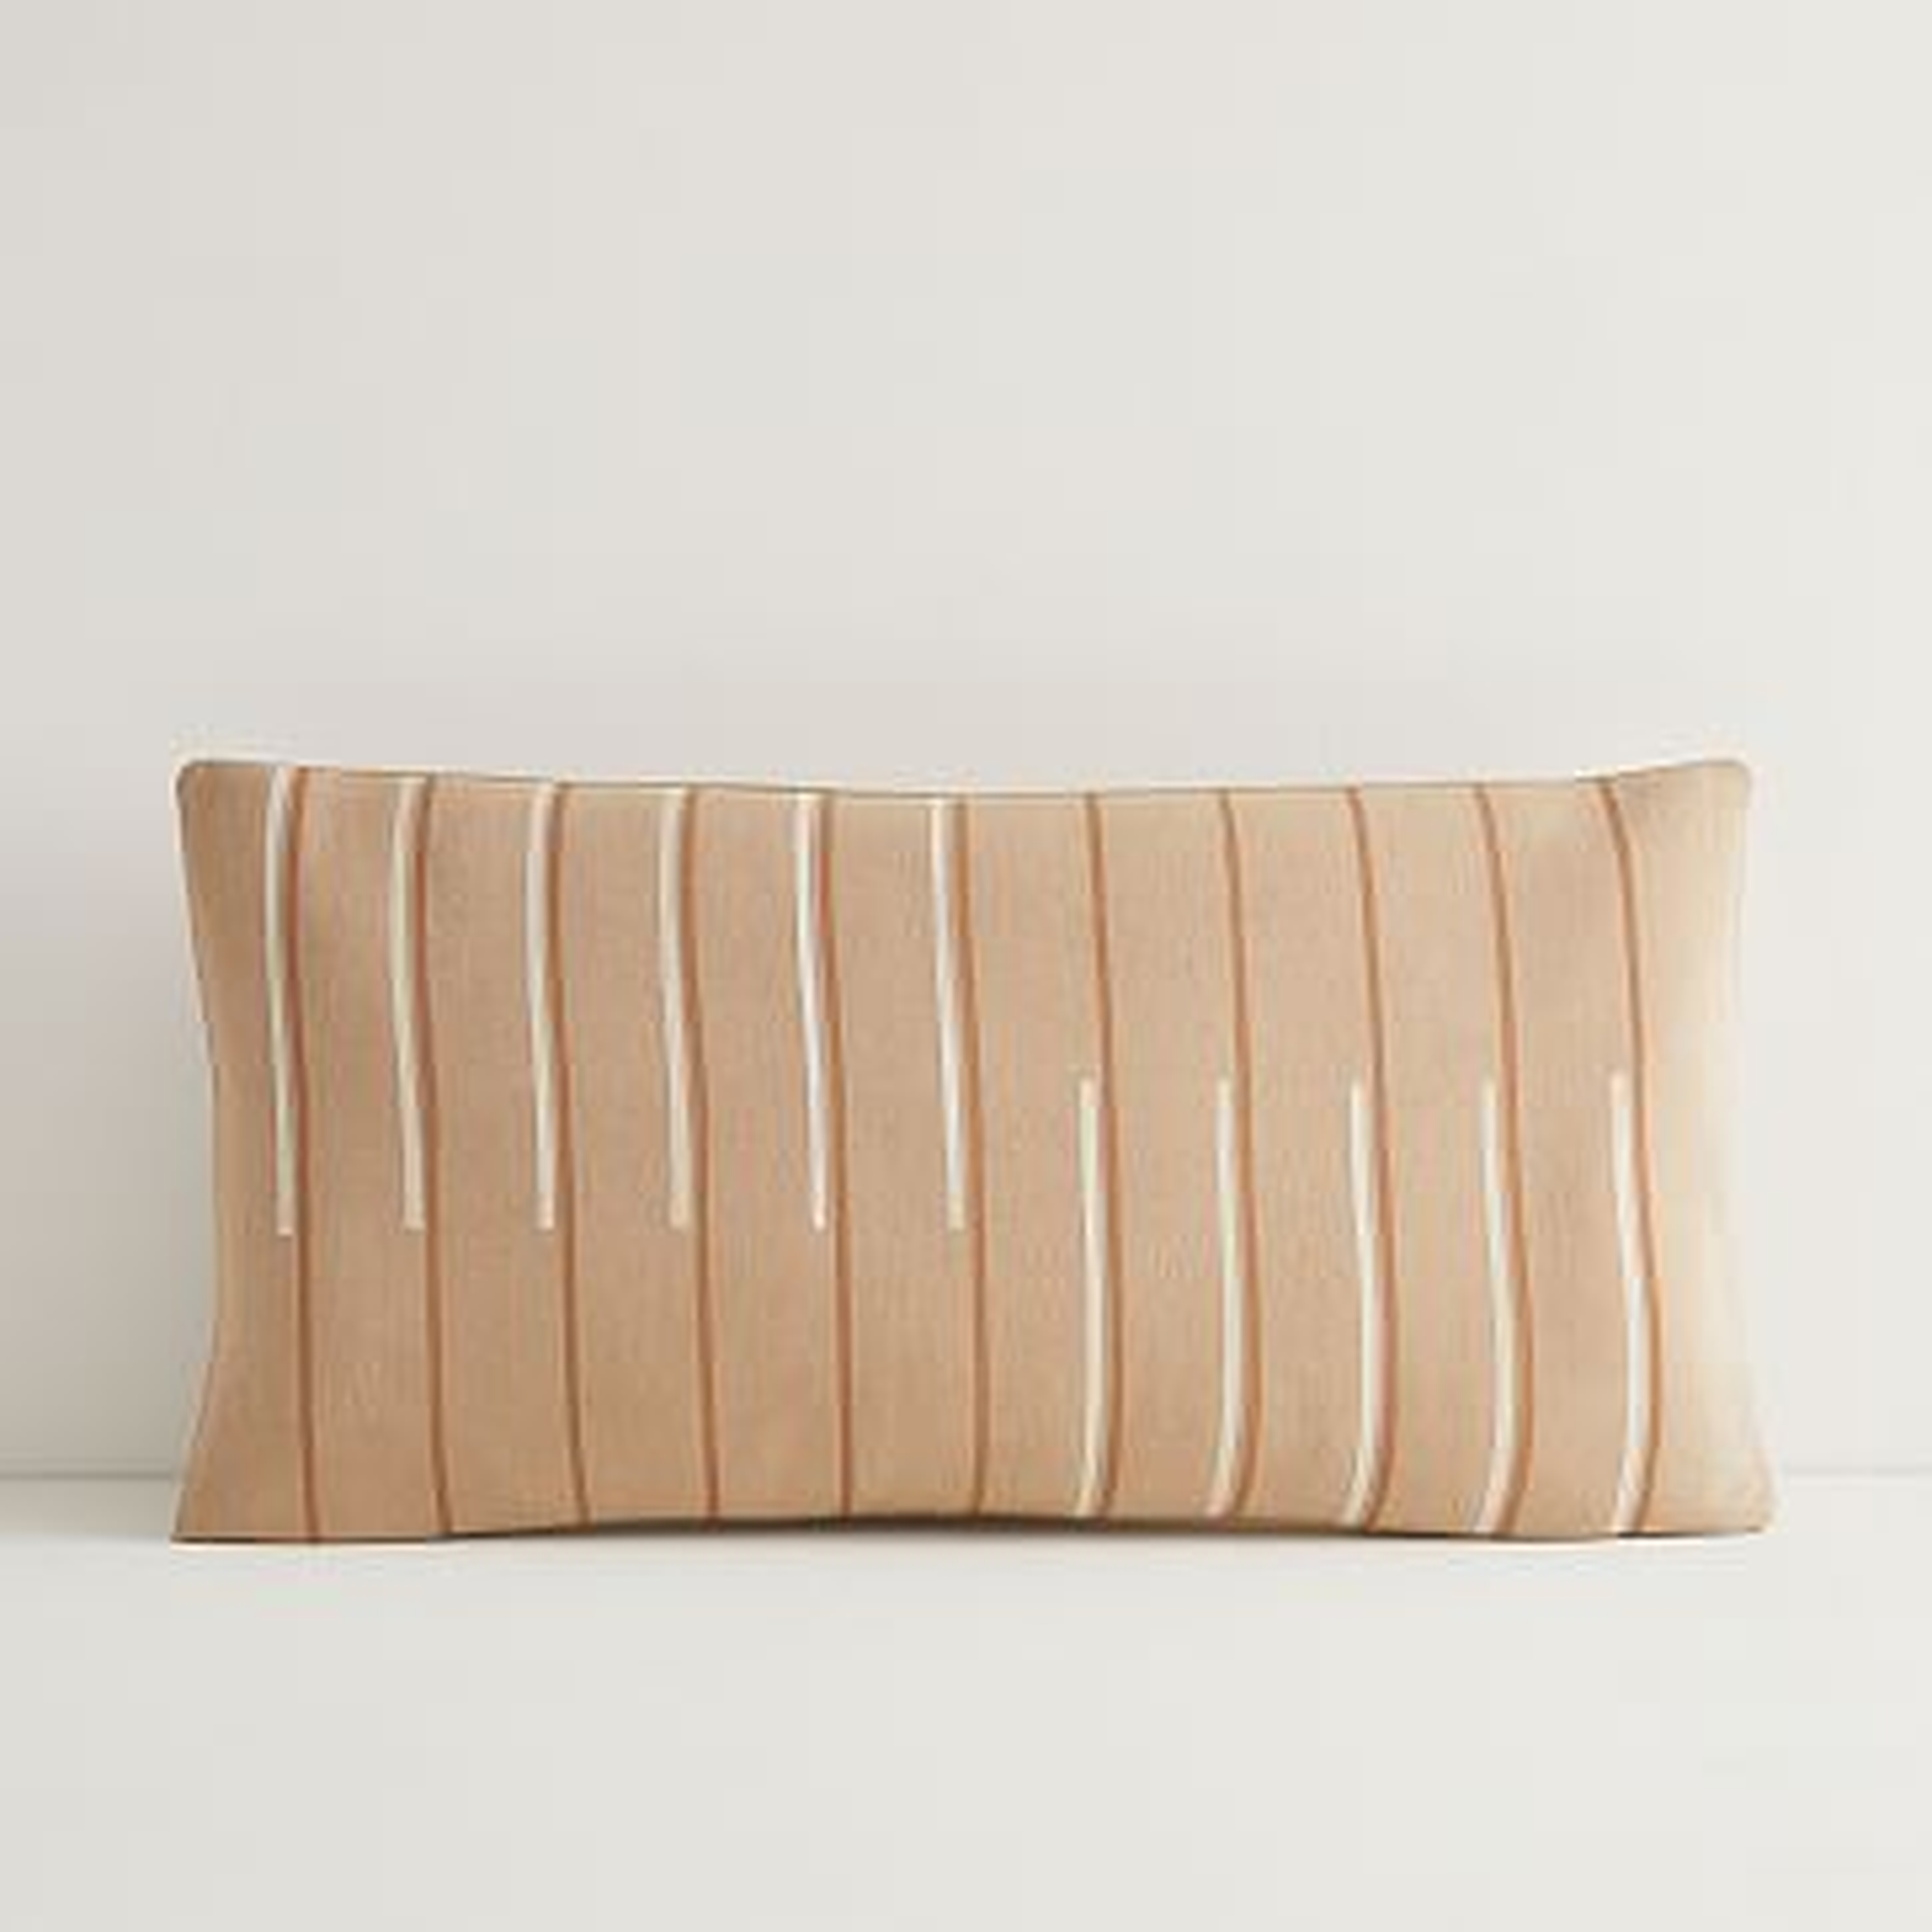 JUNEDAY Hana Lumbar Pillow Cover, Small, Hazelnut - West Elm